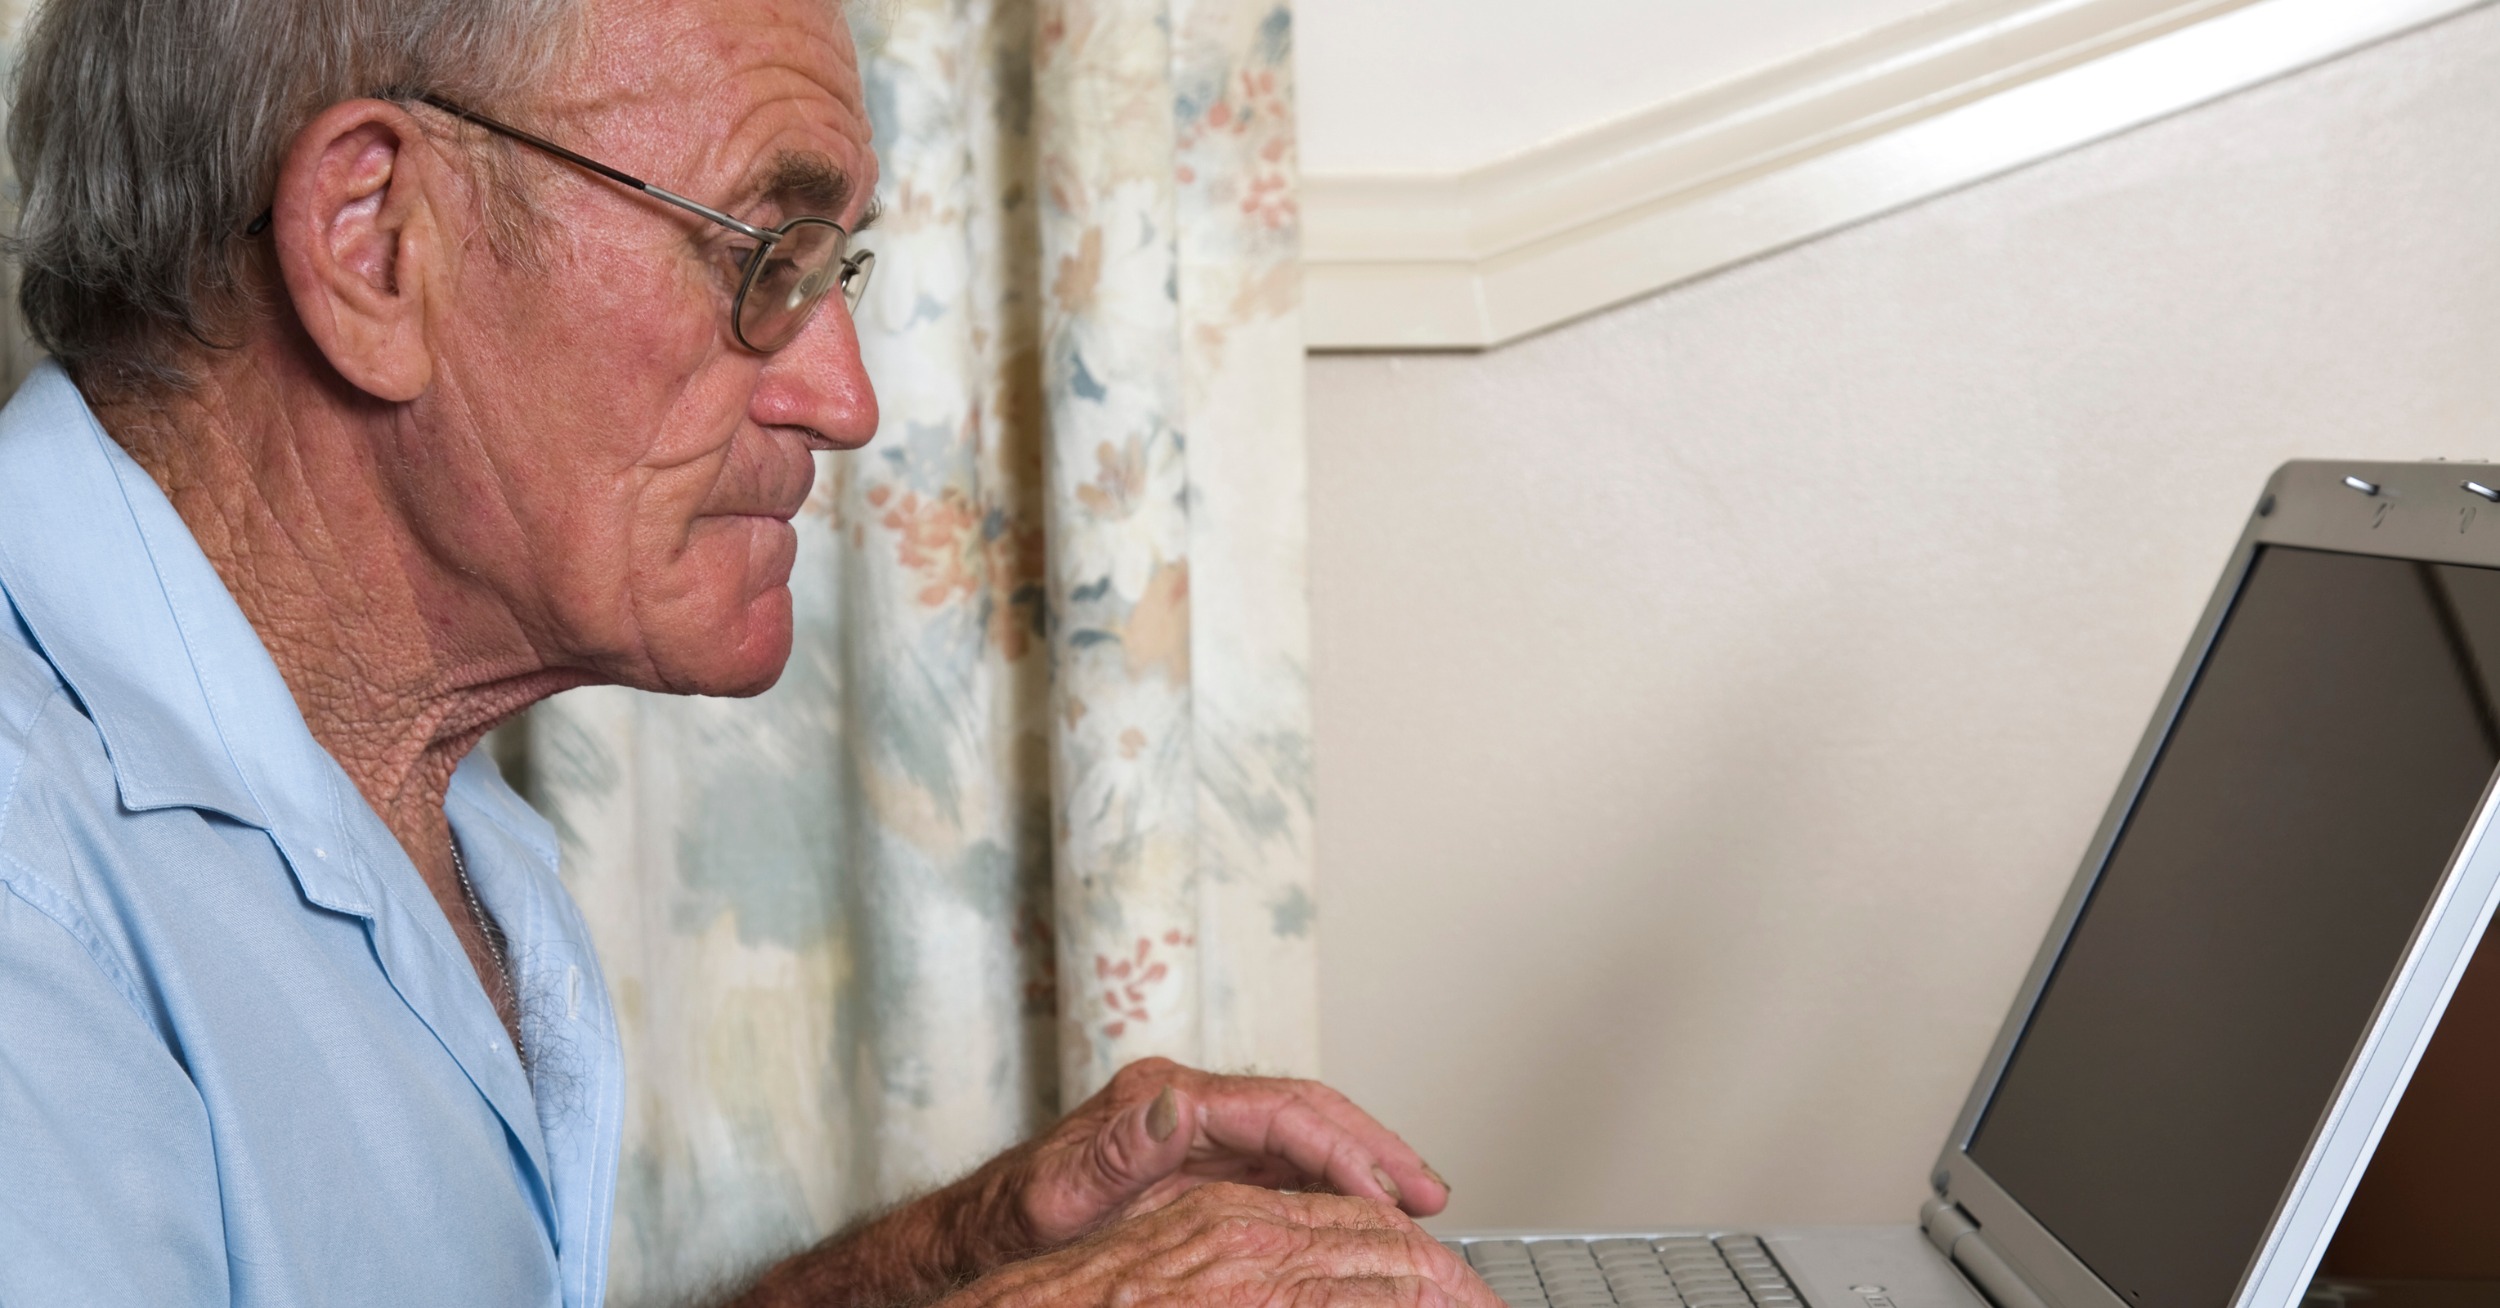 pensione privilegiata aggravamento, anziano preoccupato davanti al computer